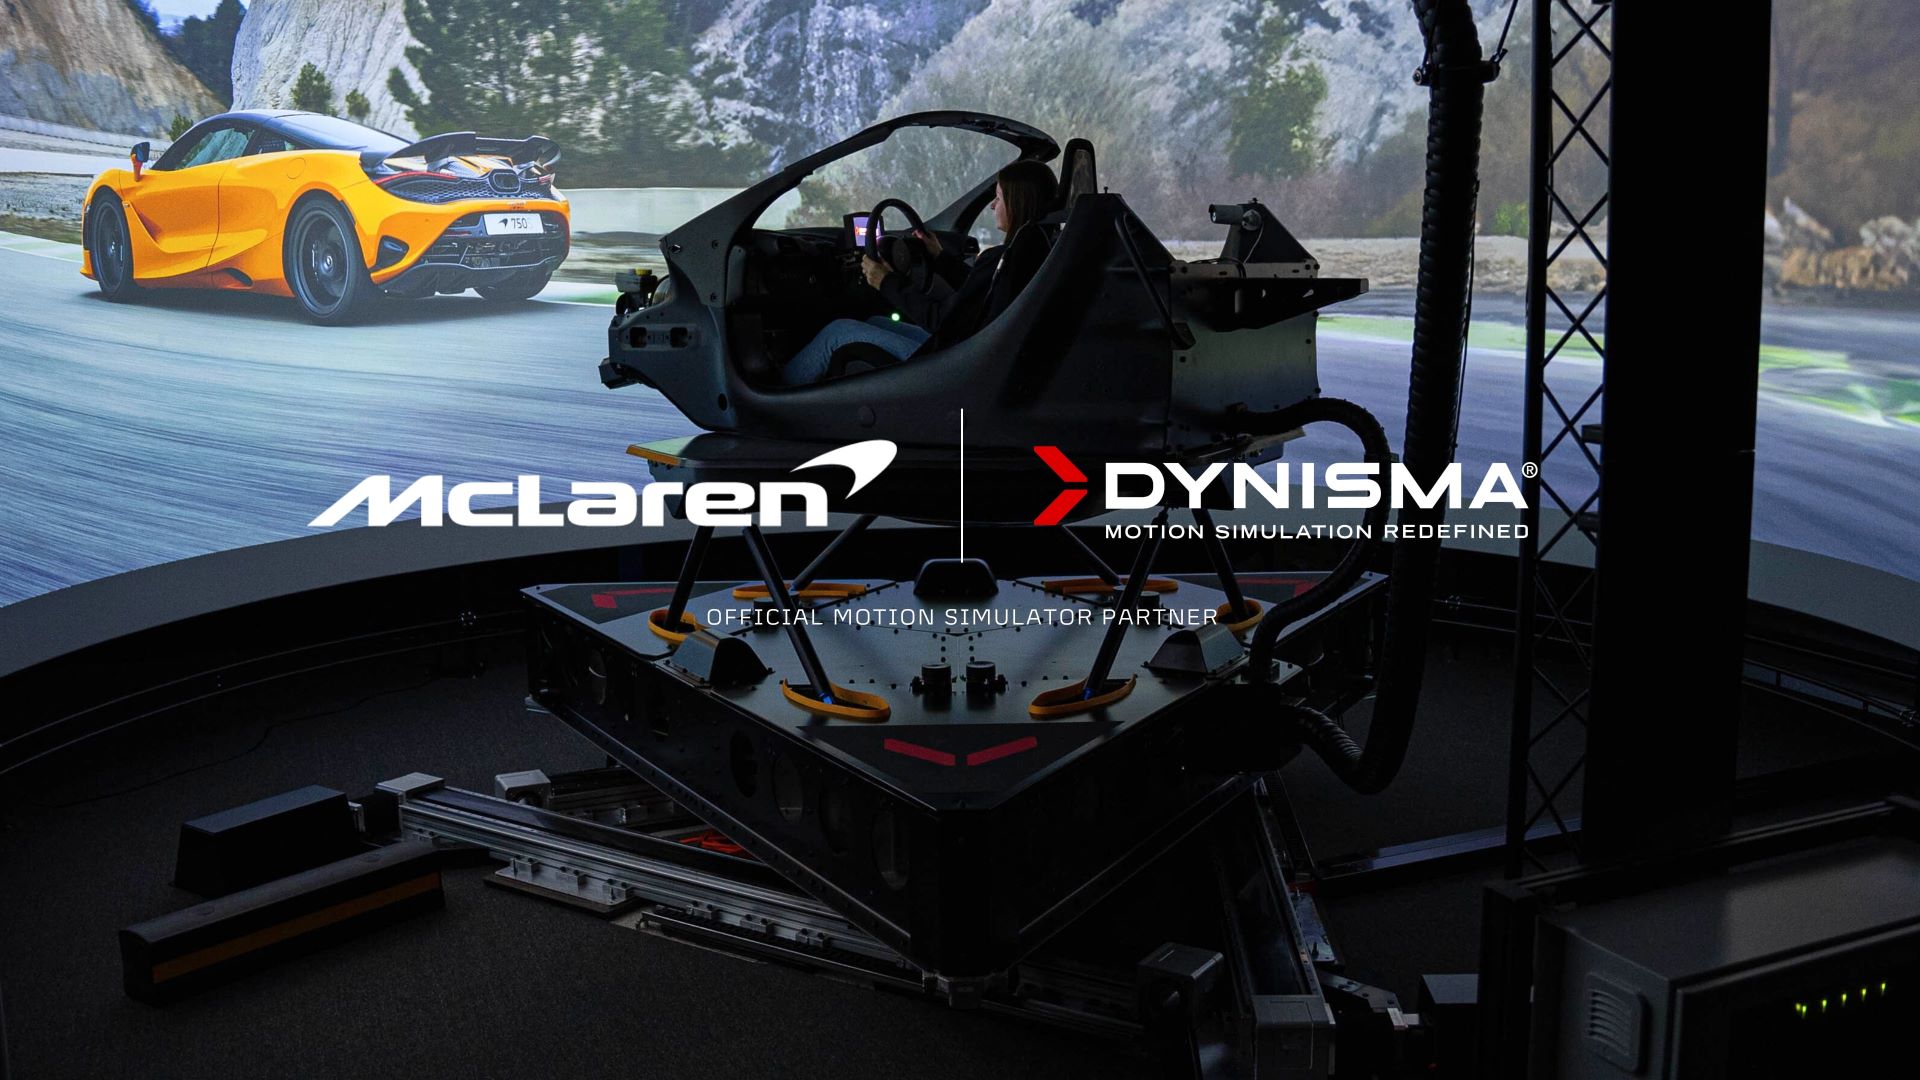 McLaren Automotive announces Dynisma as Official Motion Simulator Partner